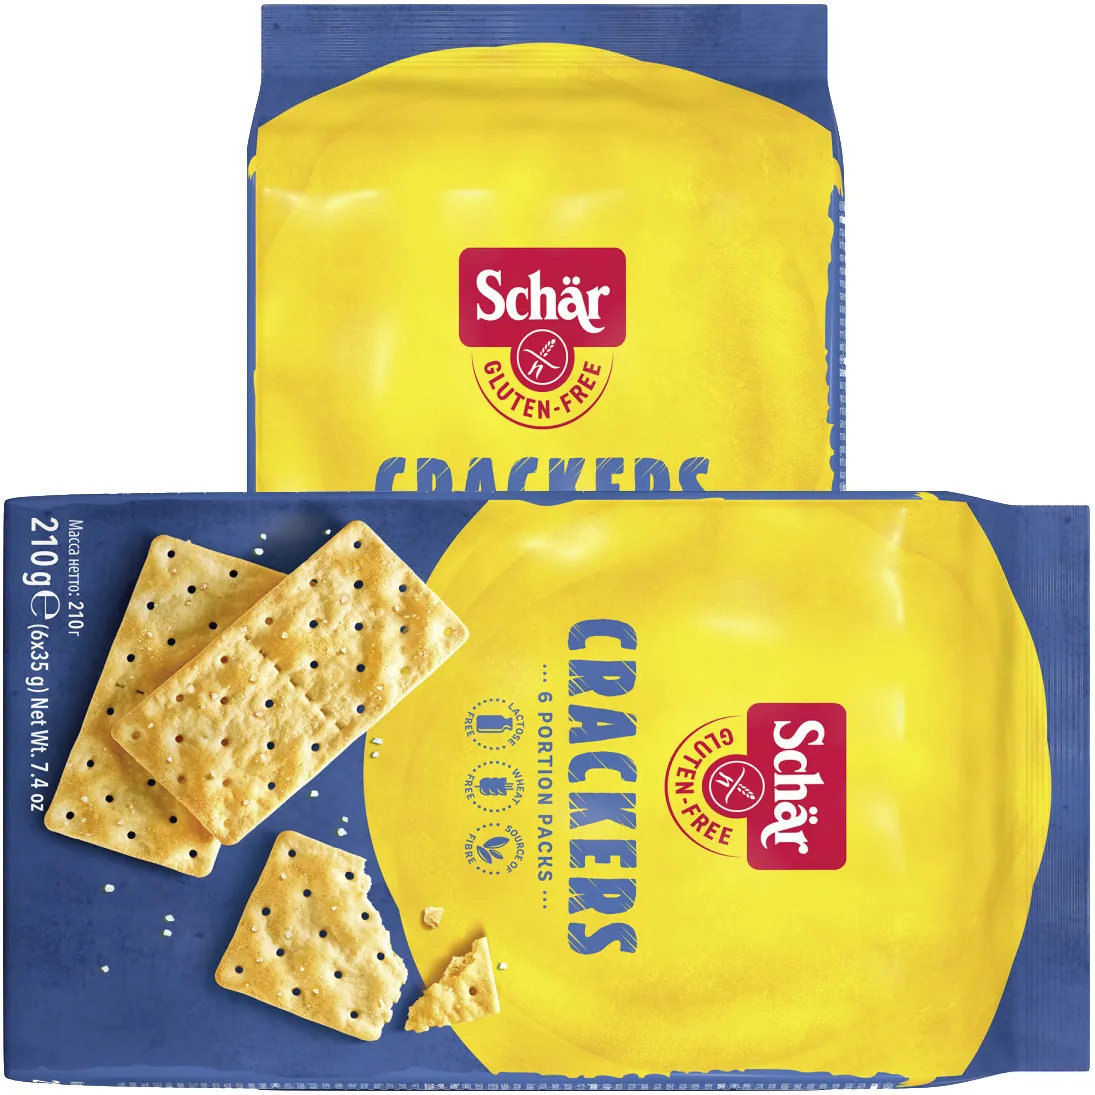 Free Schär Gluten Free Crackers